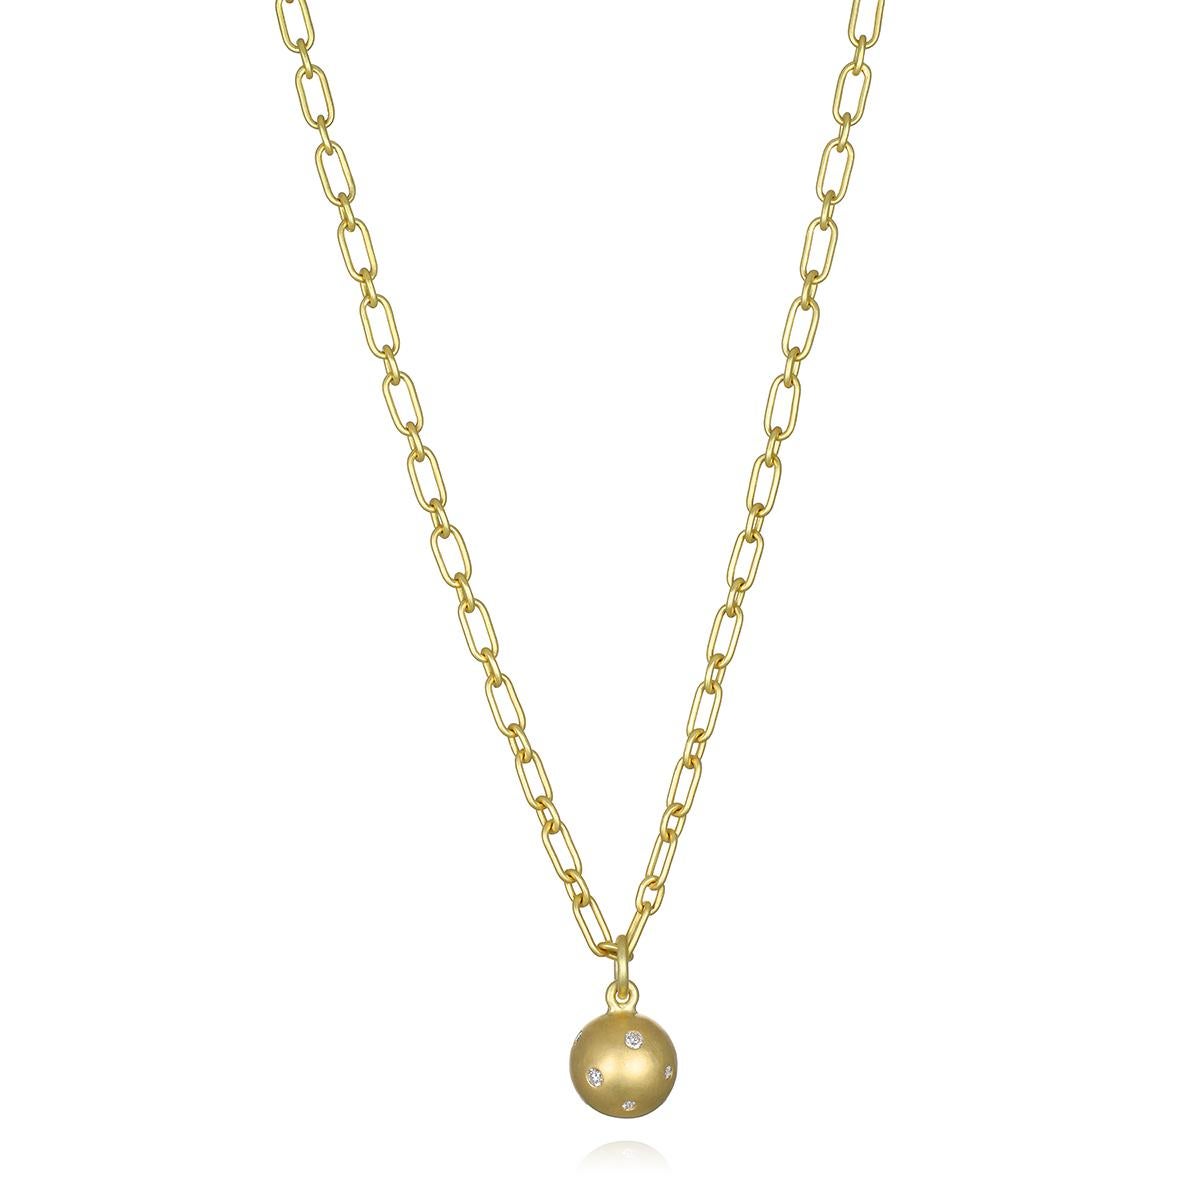 Der 18 Karat Gold Burnished Diamond Ball Charm von Faye Kim bietet mit seiner massiven Goldkonstruktion und der diamantbesetzten Oberfläche das perfekte Gewicht und genau die richtige Menge an Glanz und Funkeln. Ob allein oder in Kombination mit